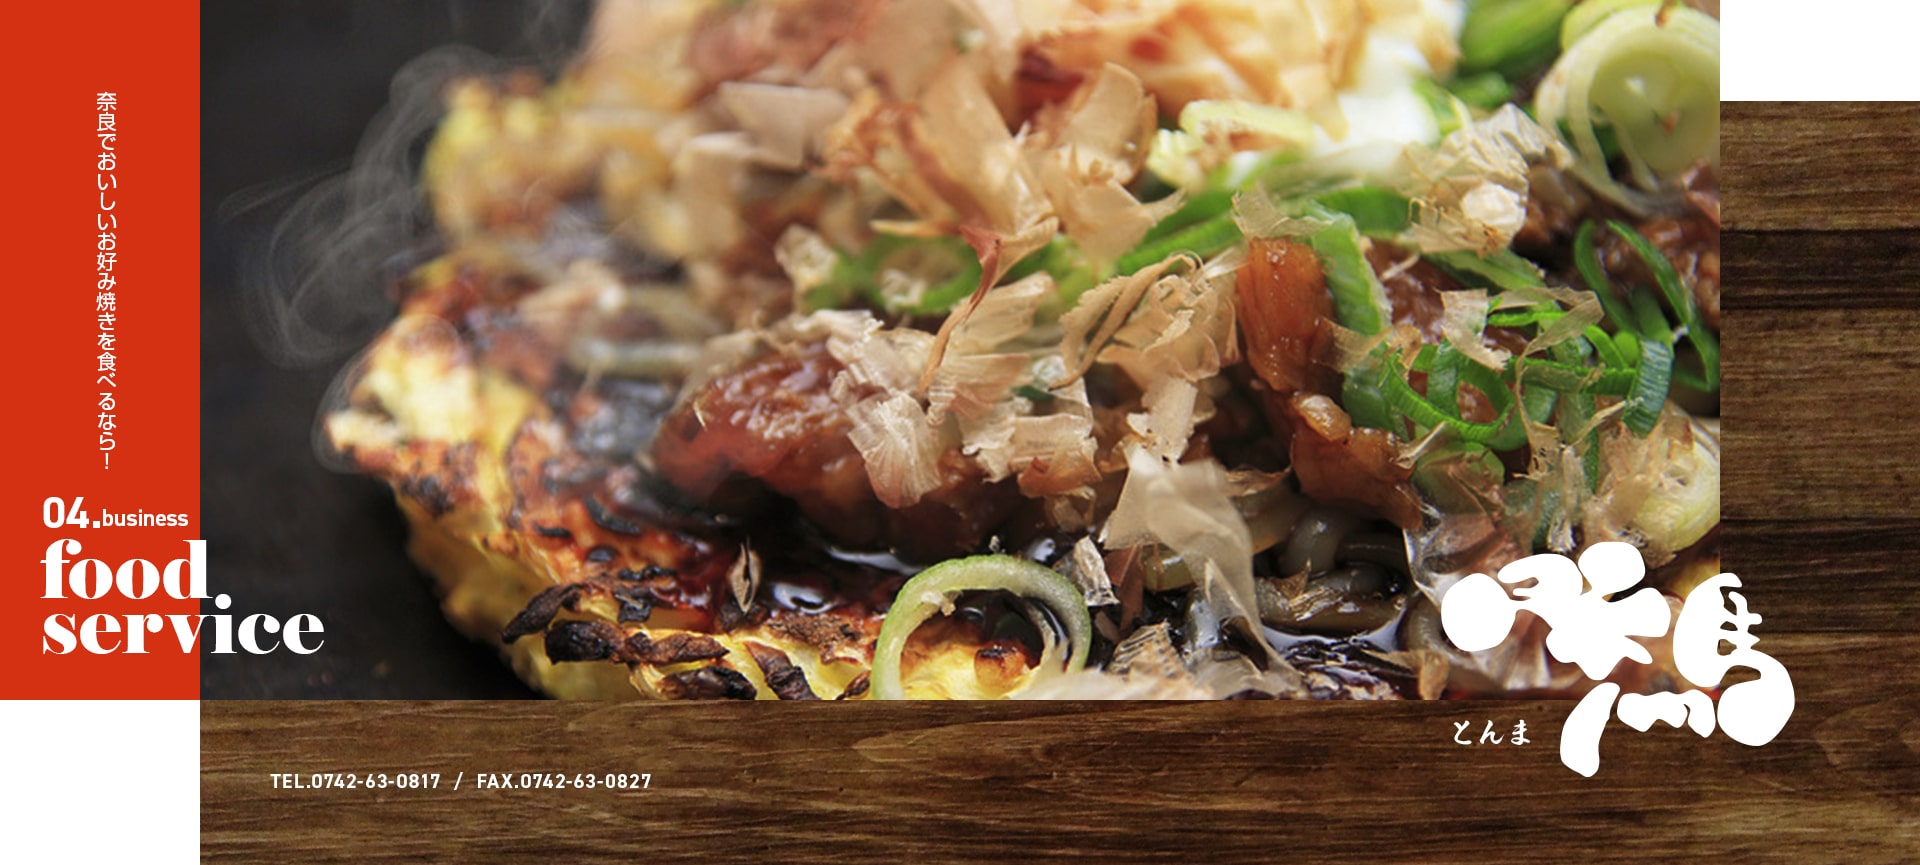 お好み焼き とんま 奈良でおいしいお好み焼きを食べるなら！ 04.business food service TEL：0742-63-0817 FAX：0742-63-0827